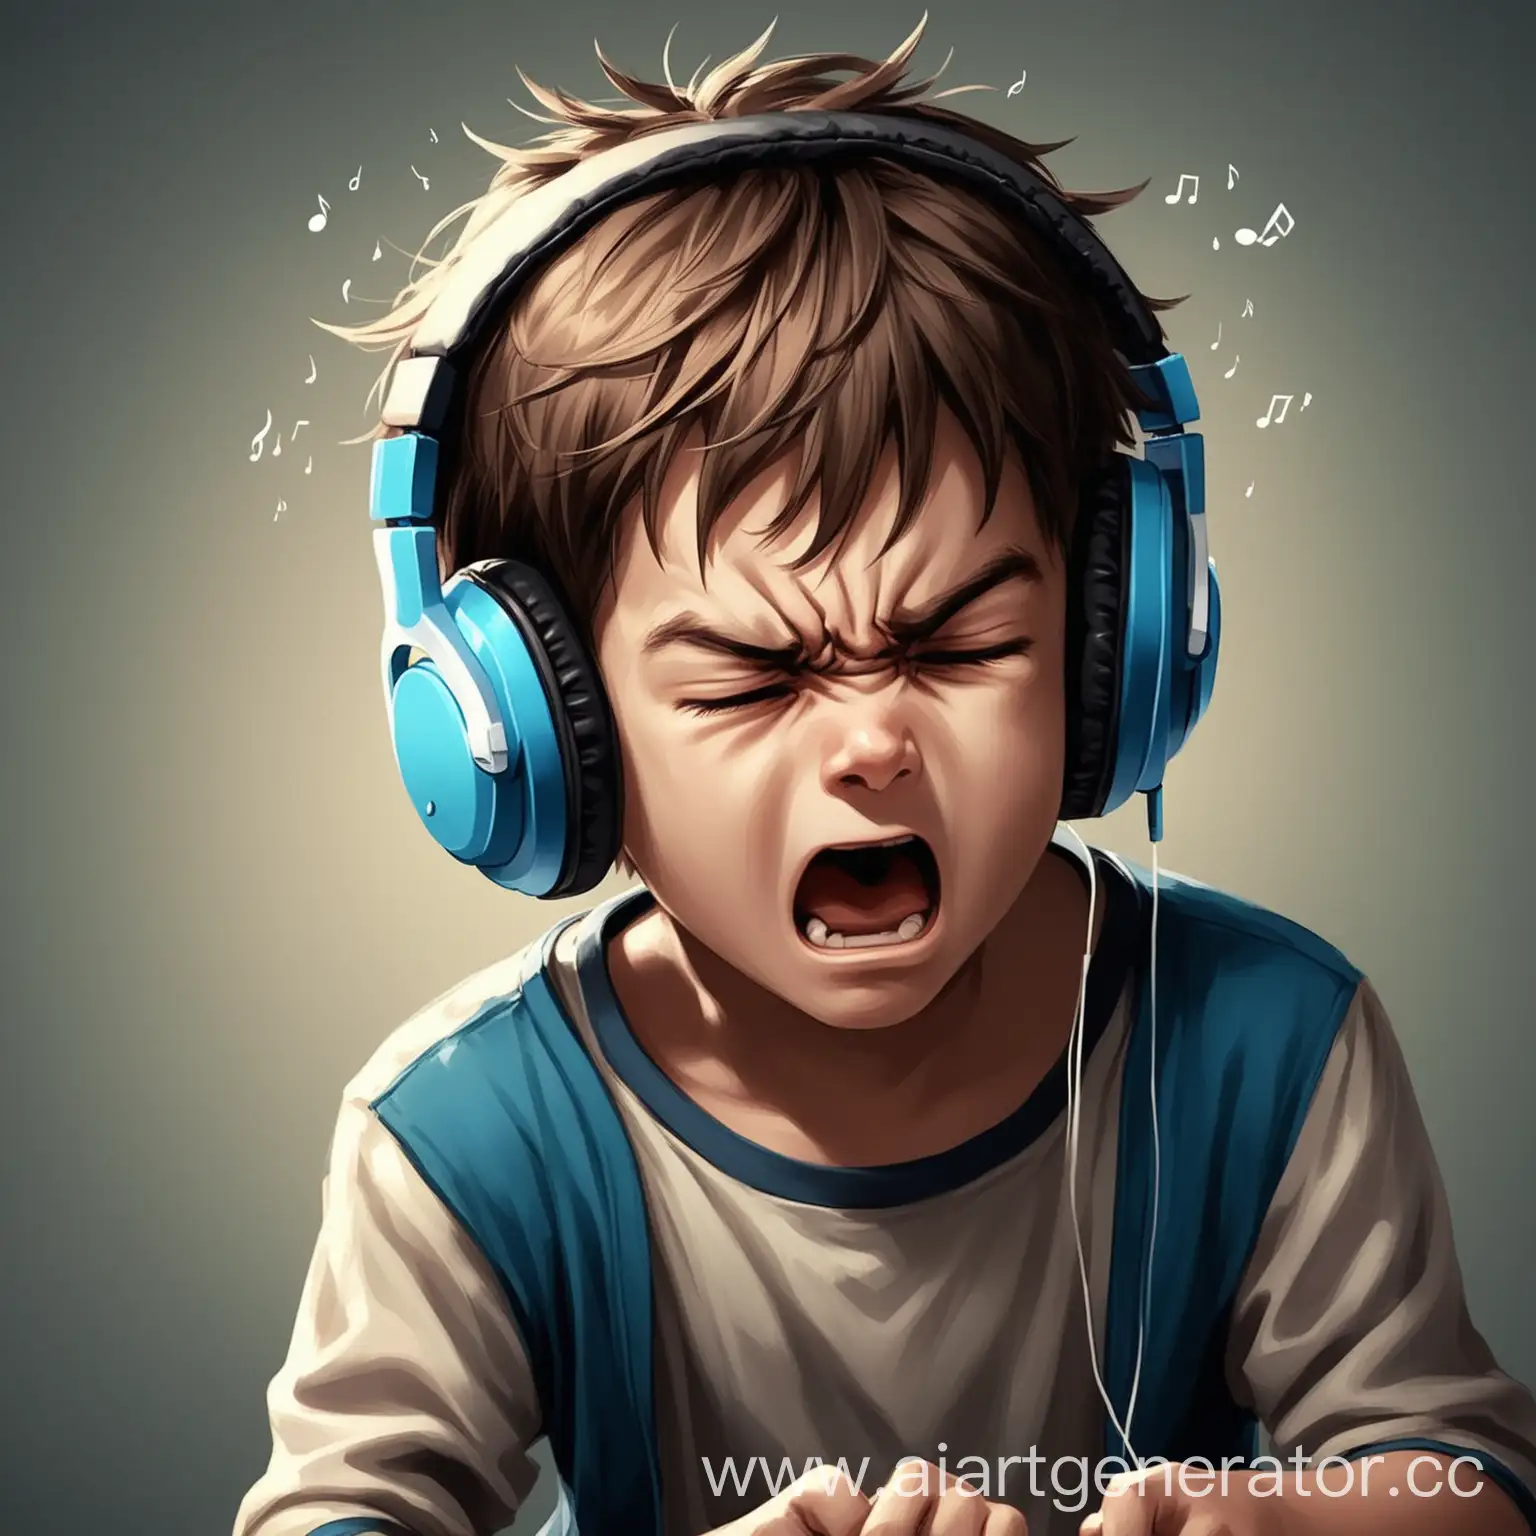 создай картинку с мальчиком, который немного расстроен из-за чего-то и слушает музыку в наушниках